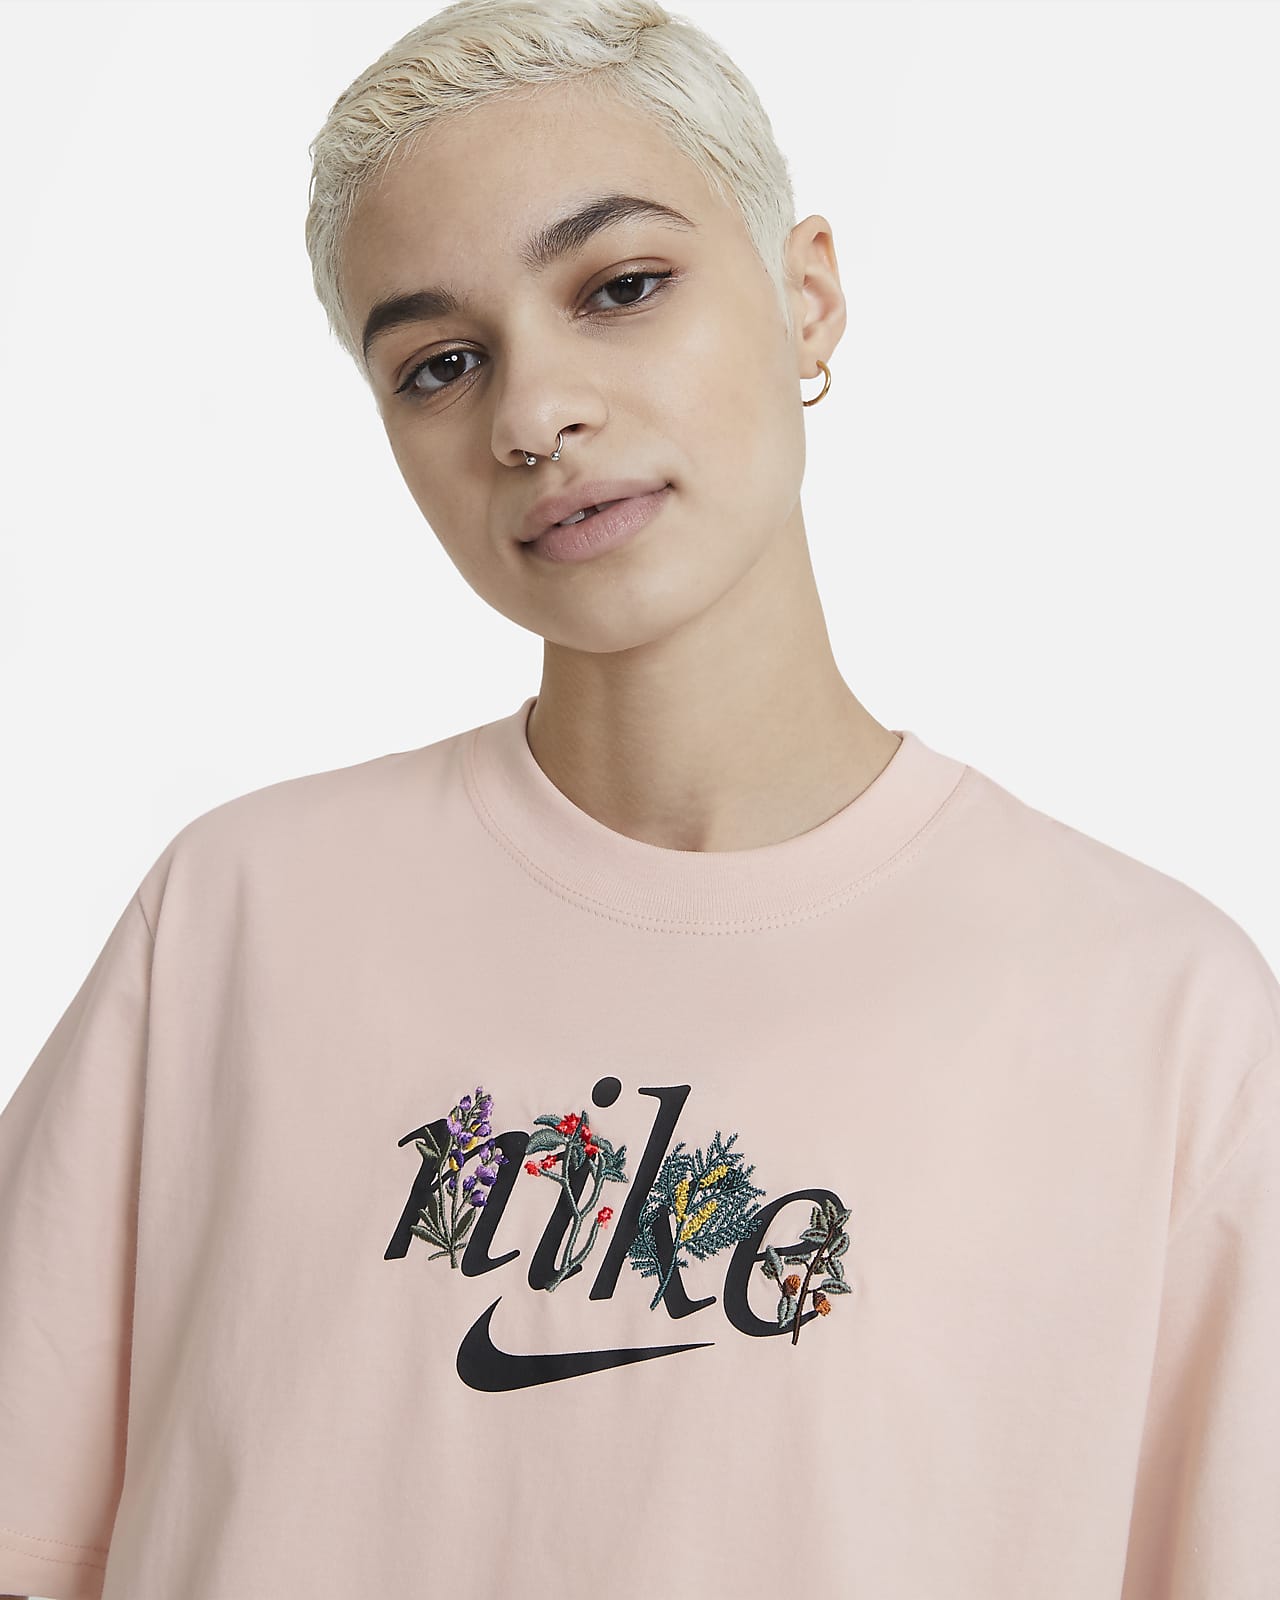 Nike Women's T-Shirt. Nike